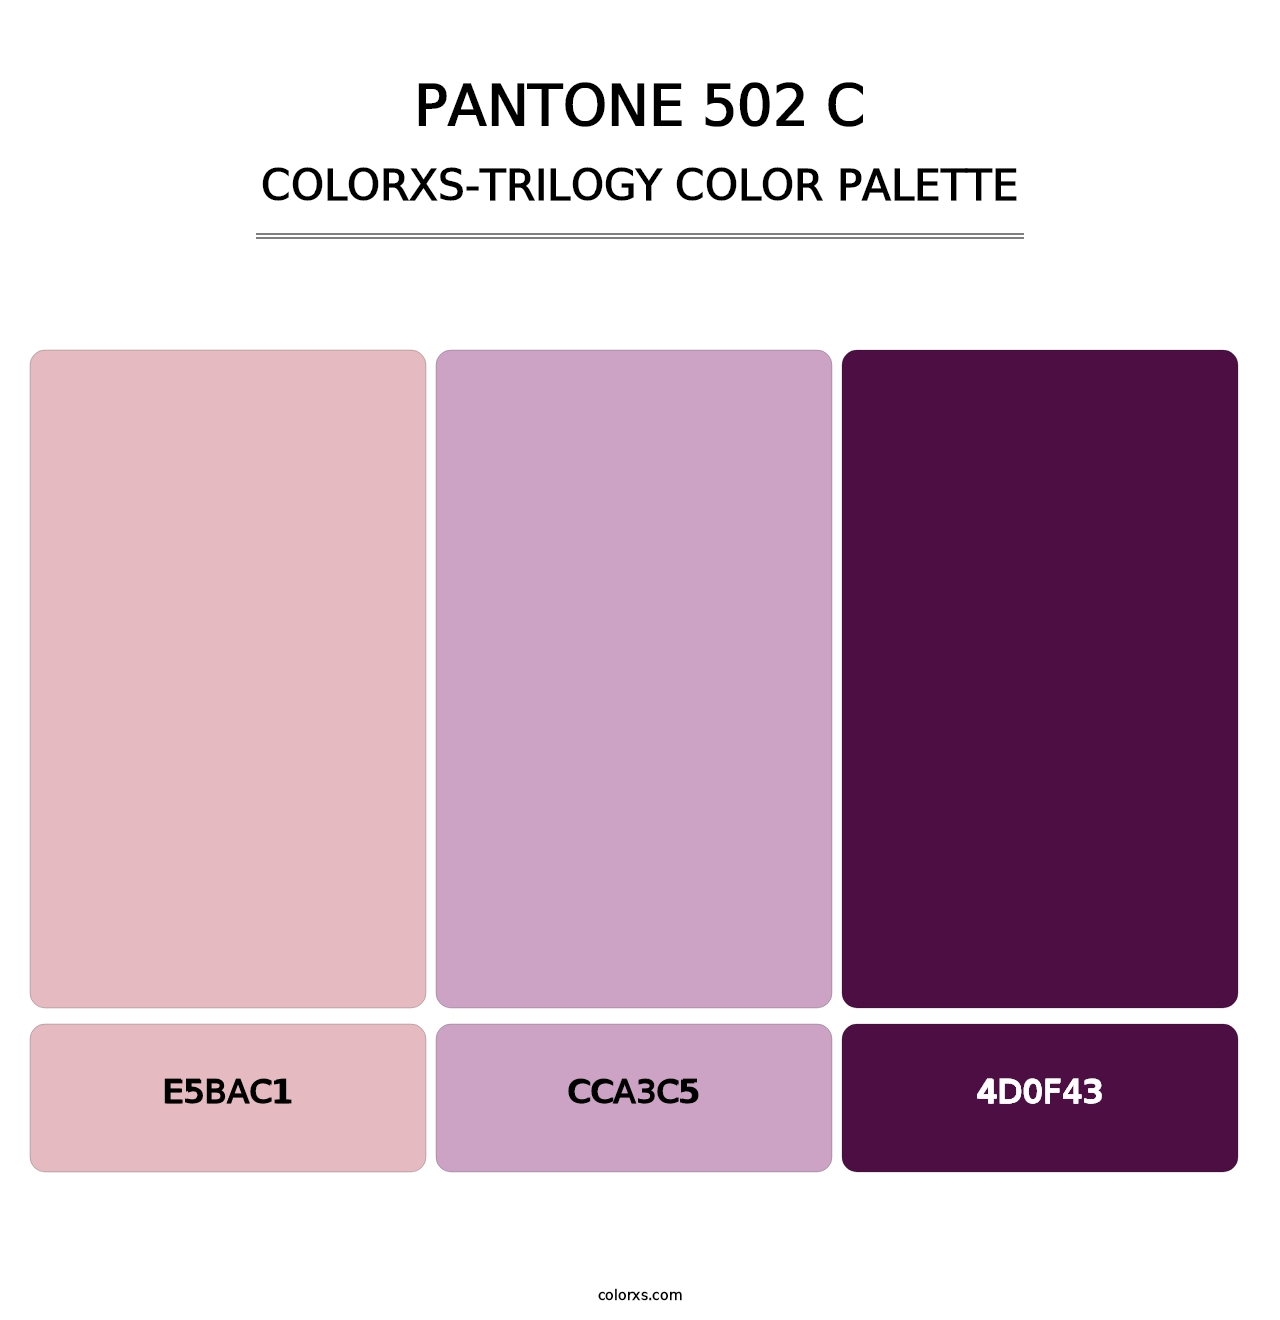 PANTONE 502 C - Colorxs Trilogy Palette